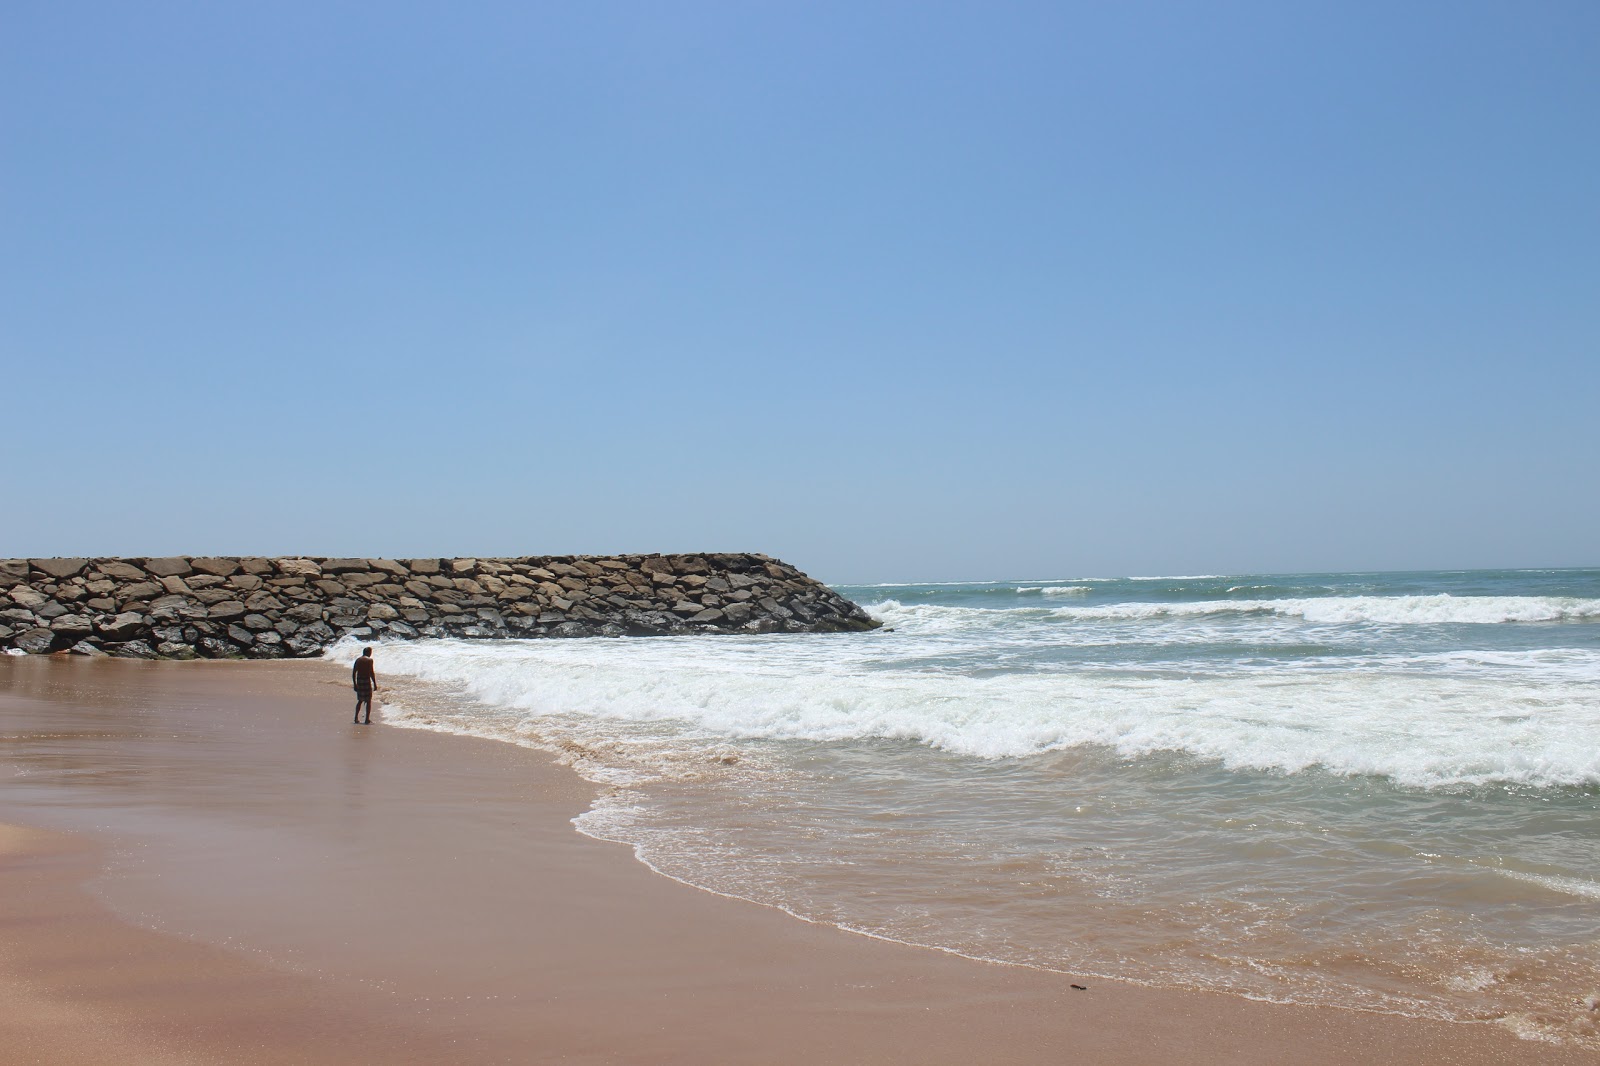 Zdjęcie Nadar Uvari Beach z powierzchnią jasny piasek